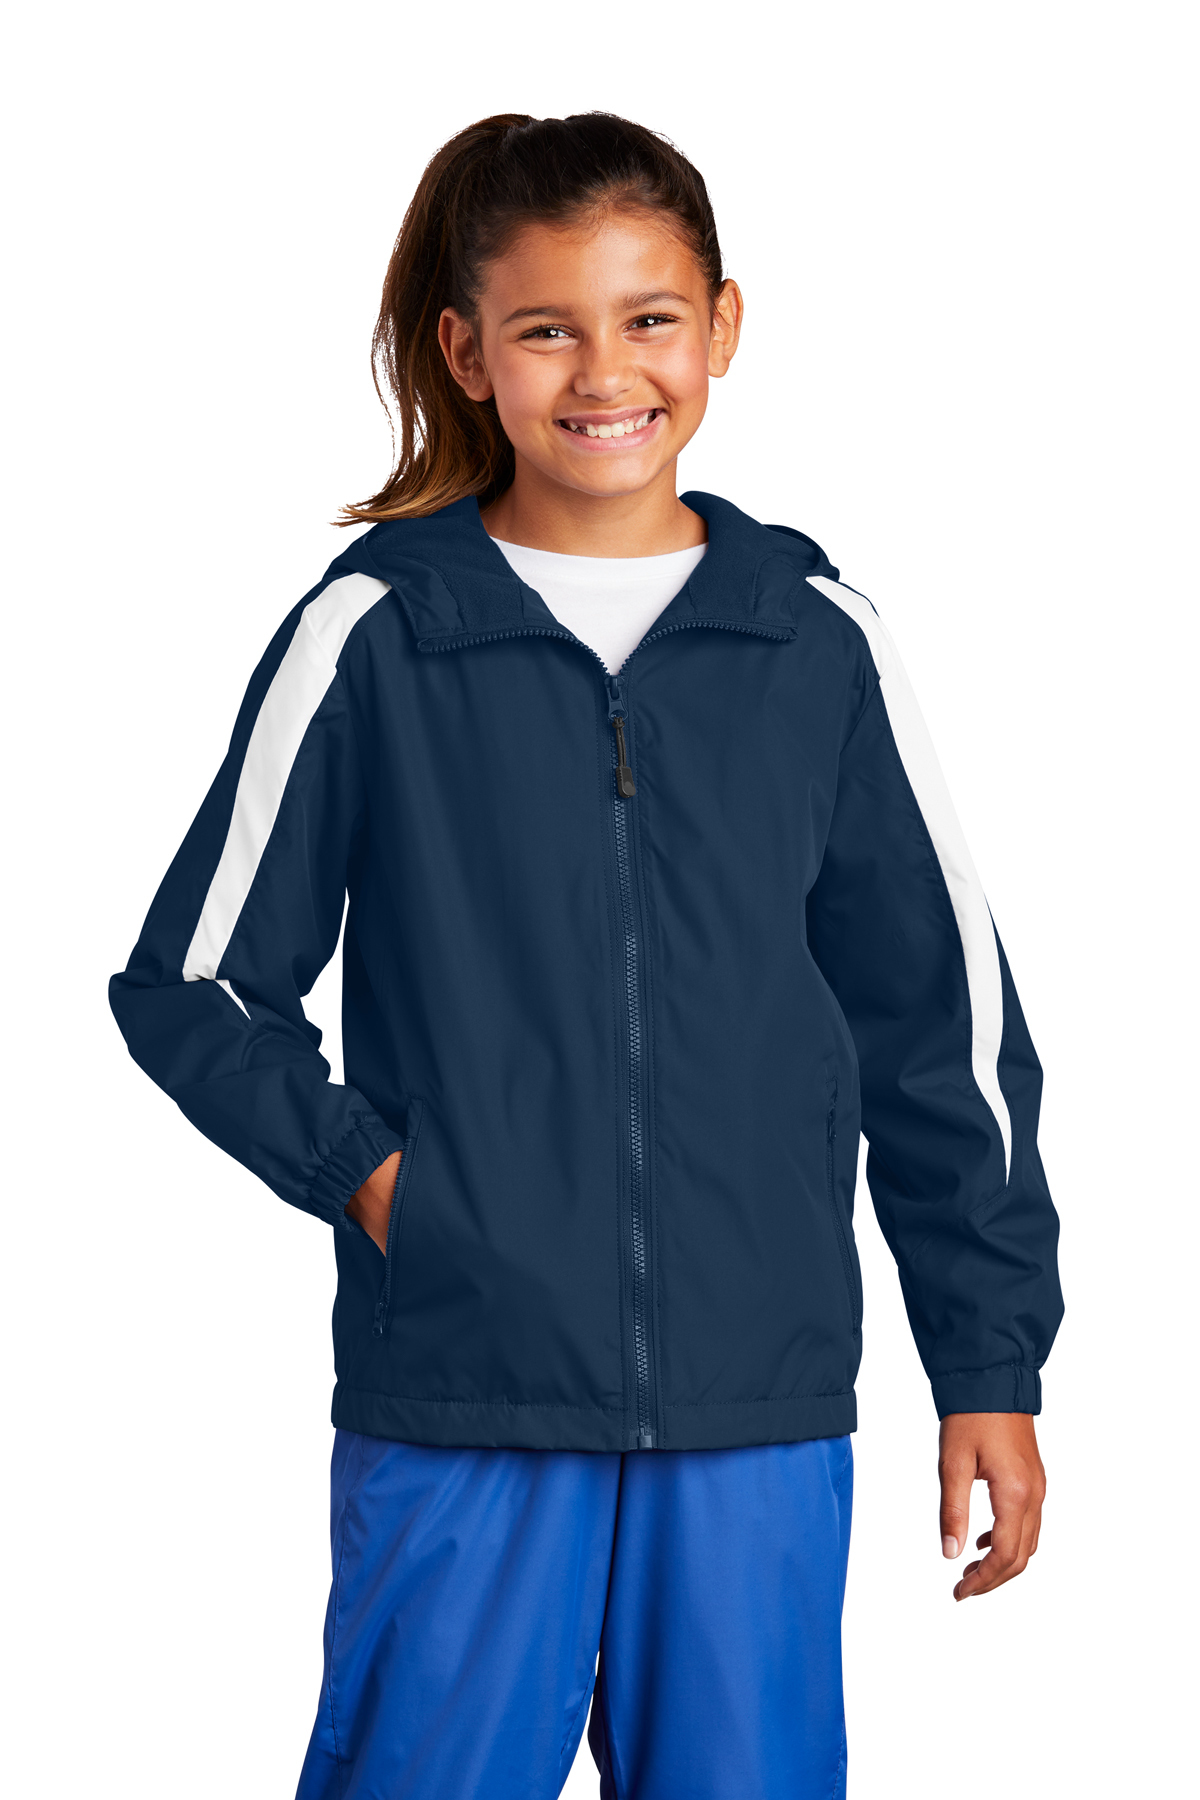 Sport-Tek Youth Fleece-Lined Colorblock Jacket | Product | Sport-Tek